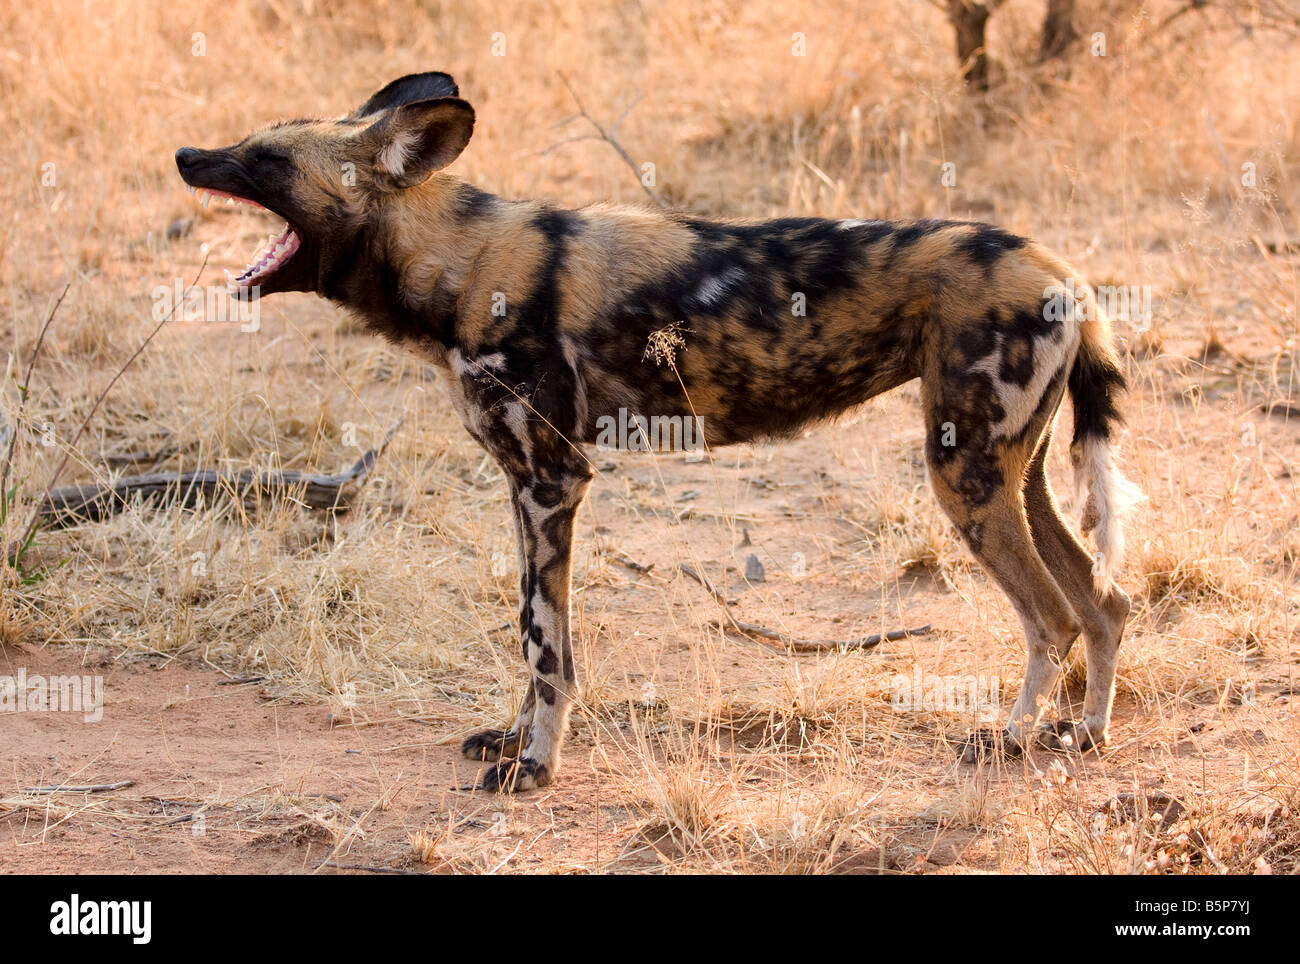 Wild dog,Etosha National Park,Numibia,Africa Stock Photo